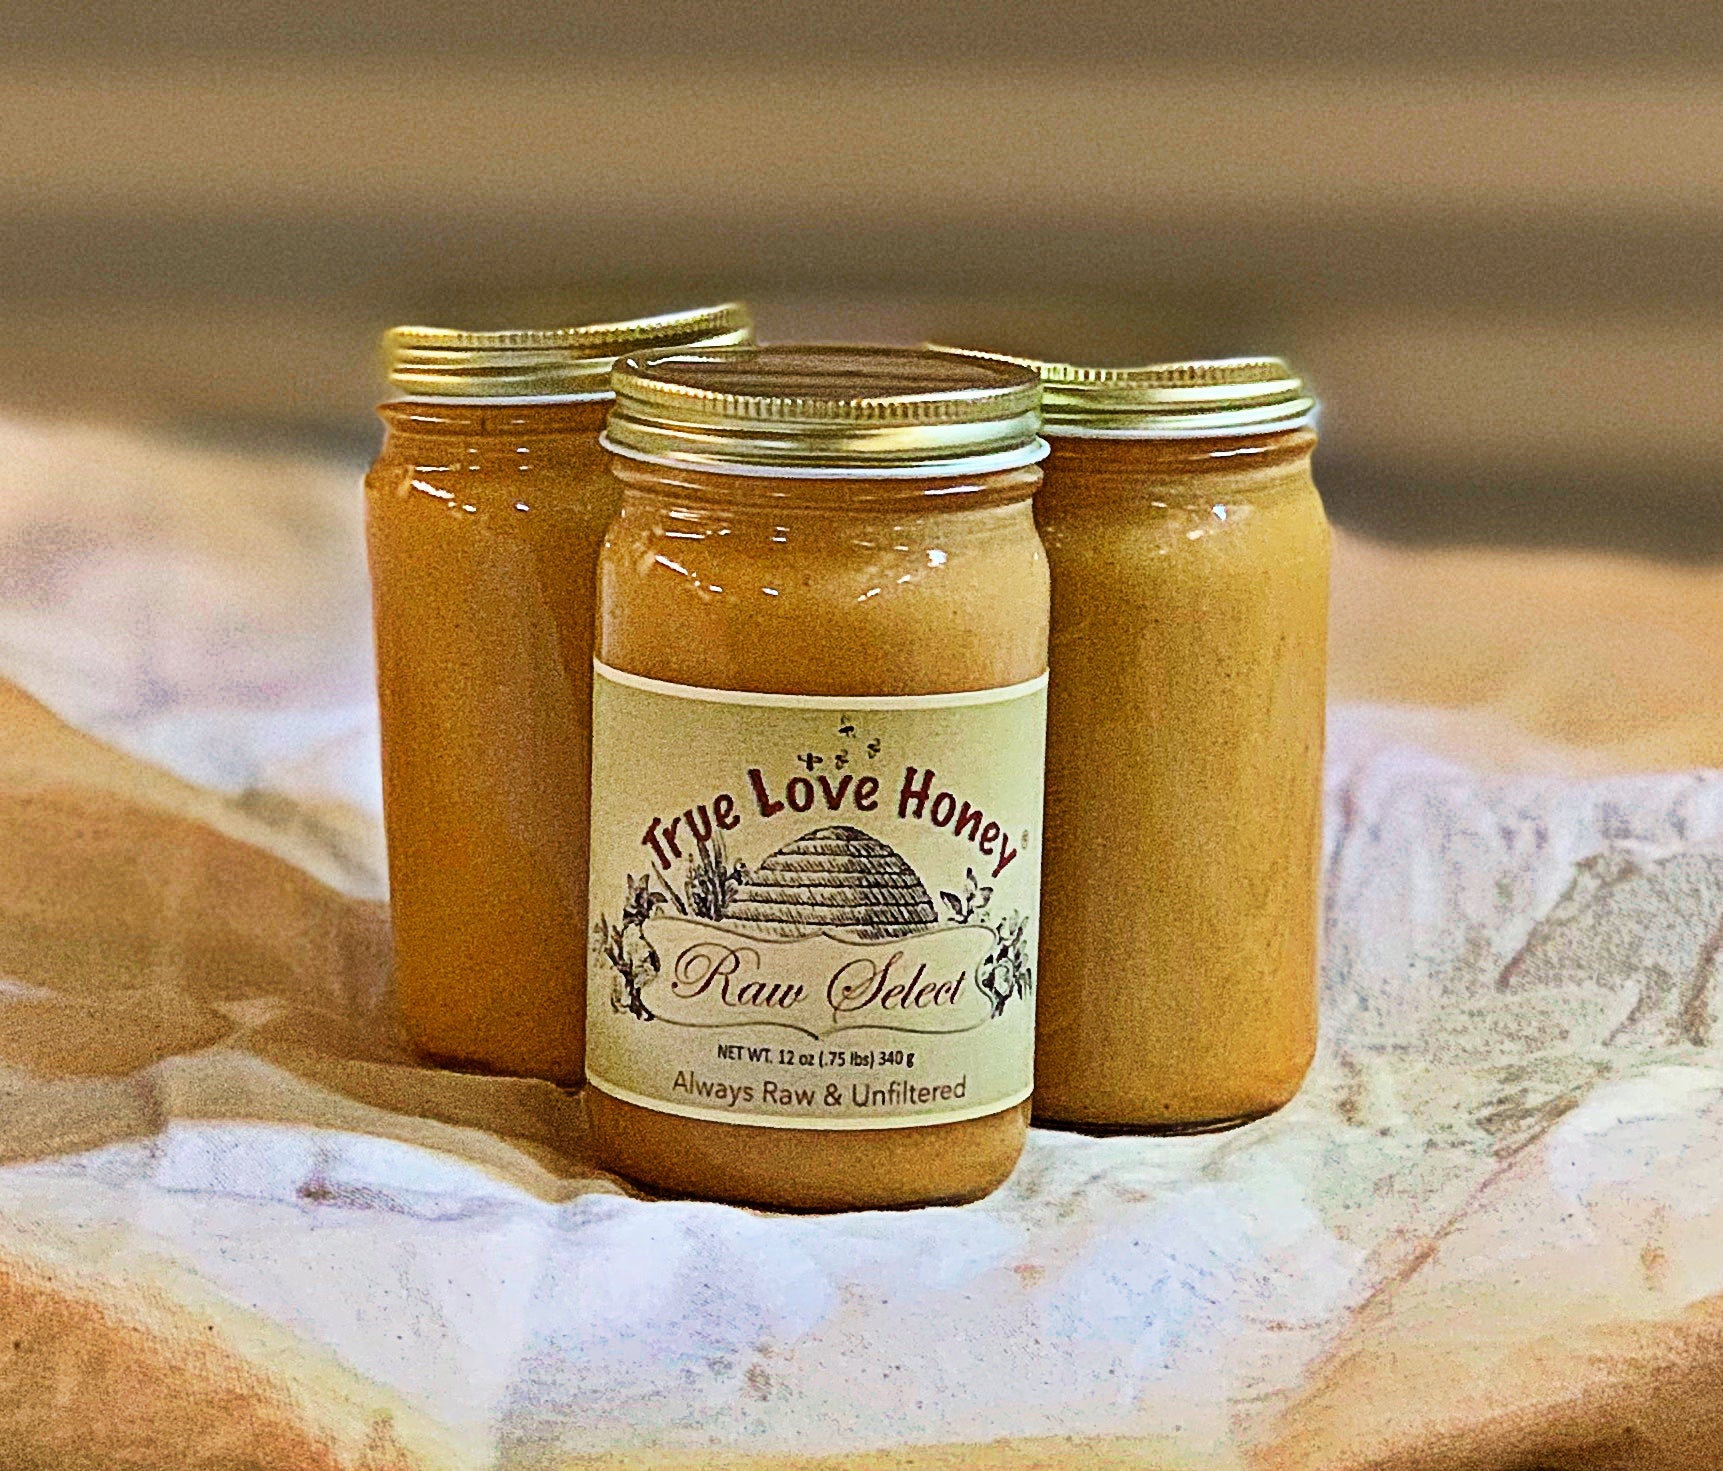 Peanut Butter Creamed Honey (Three 8oz jars) – True Love Honey